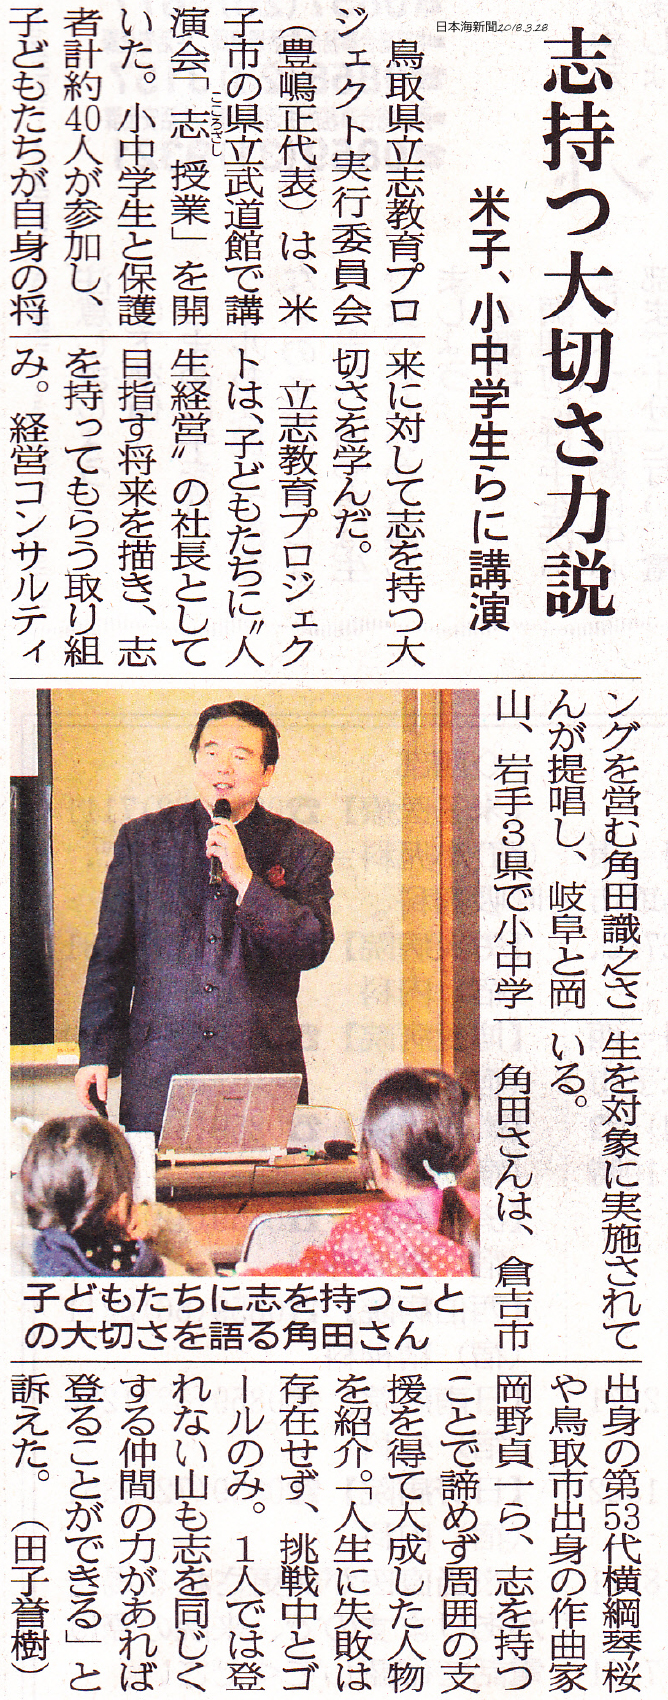 2018年3月28日（水）発行の日本海新聞にて、
「米子市で開催の志授業」について掲載されました。